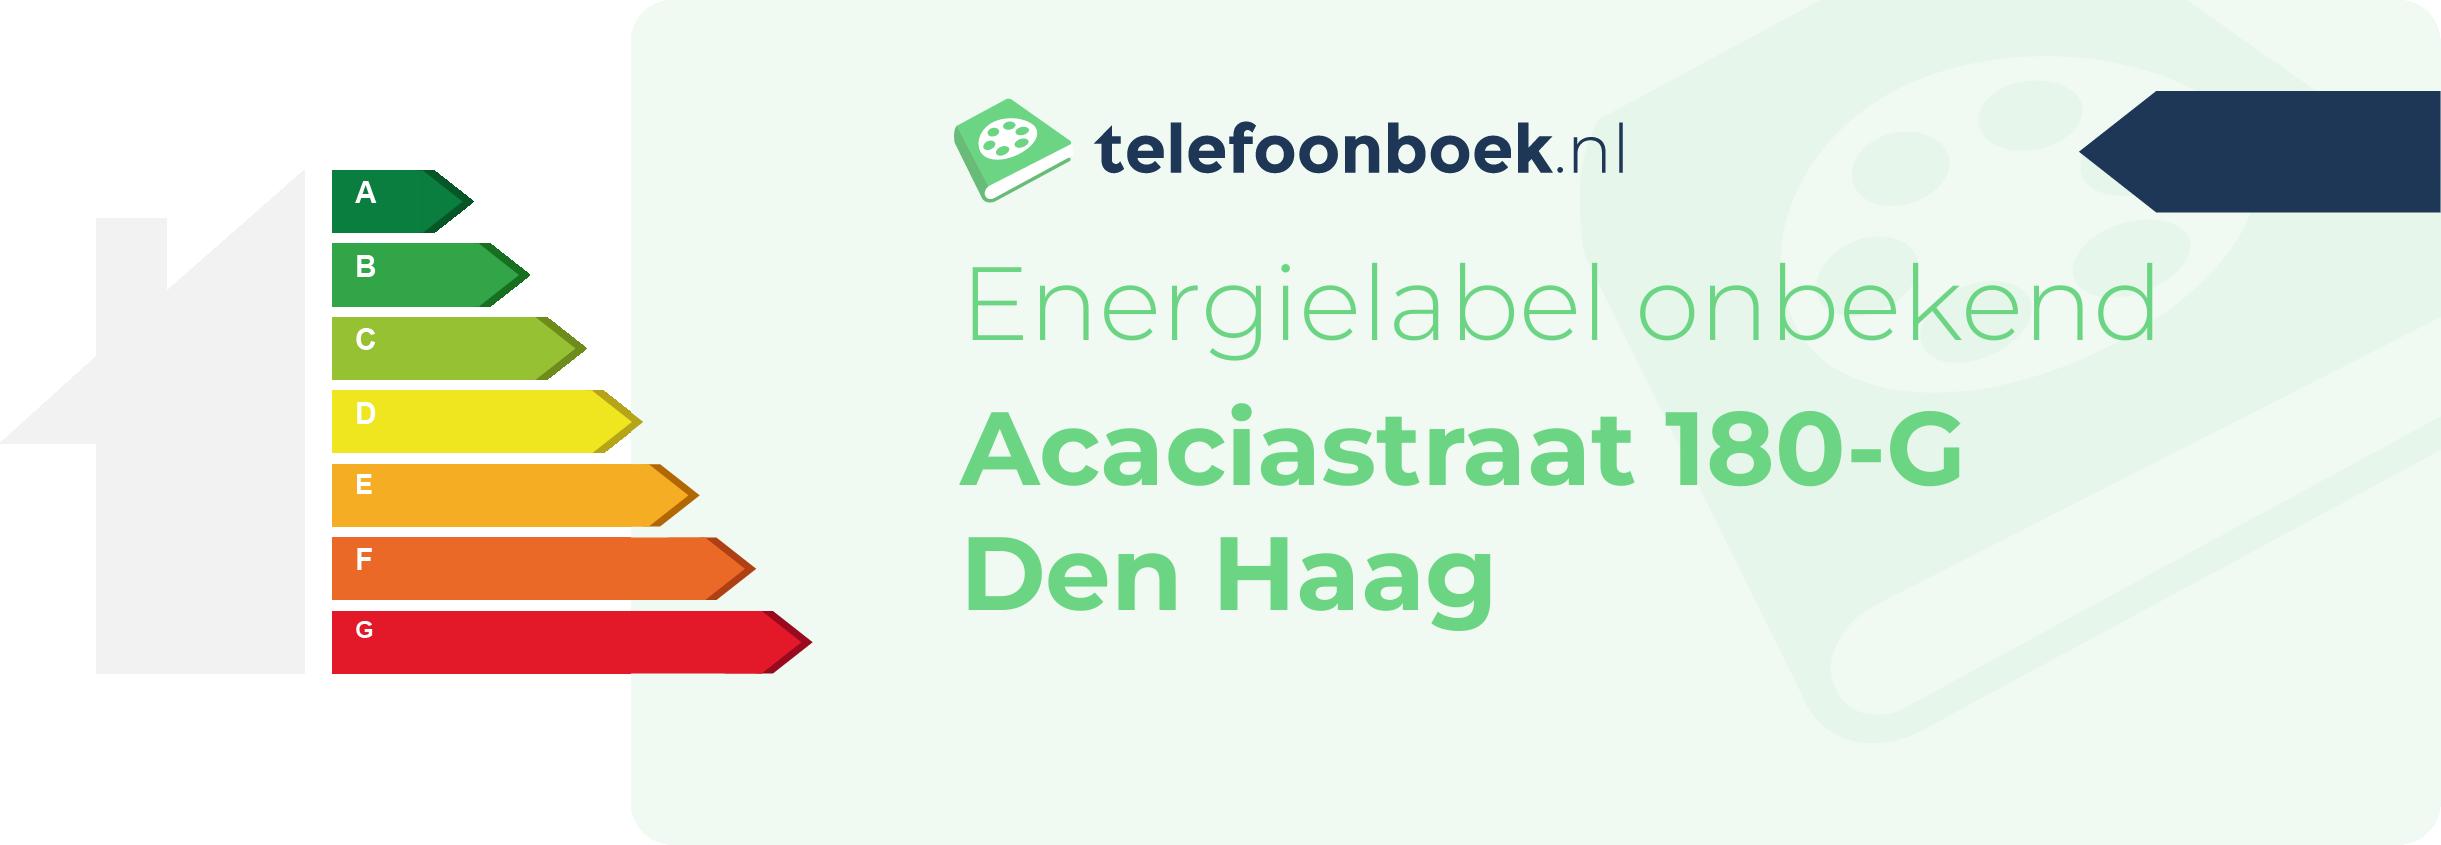 Energielabel Acaciastraat 180-G Den Haag